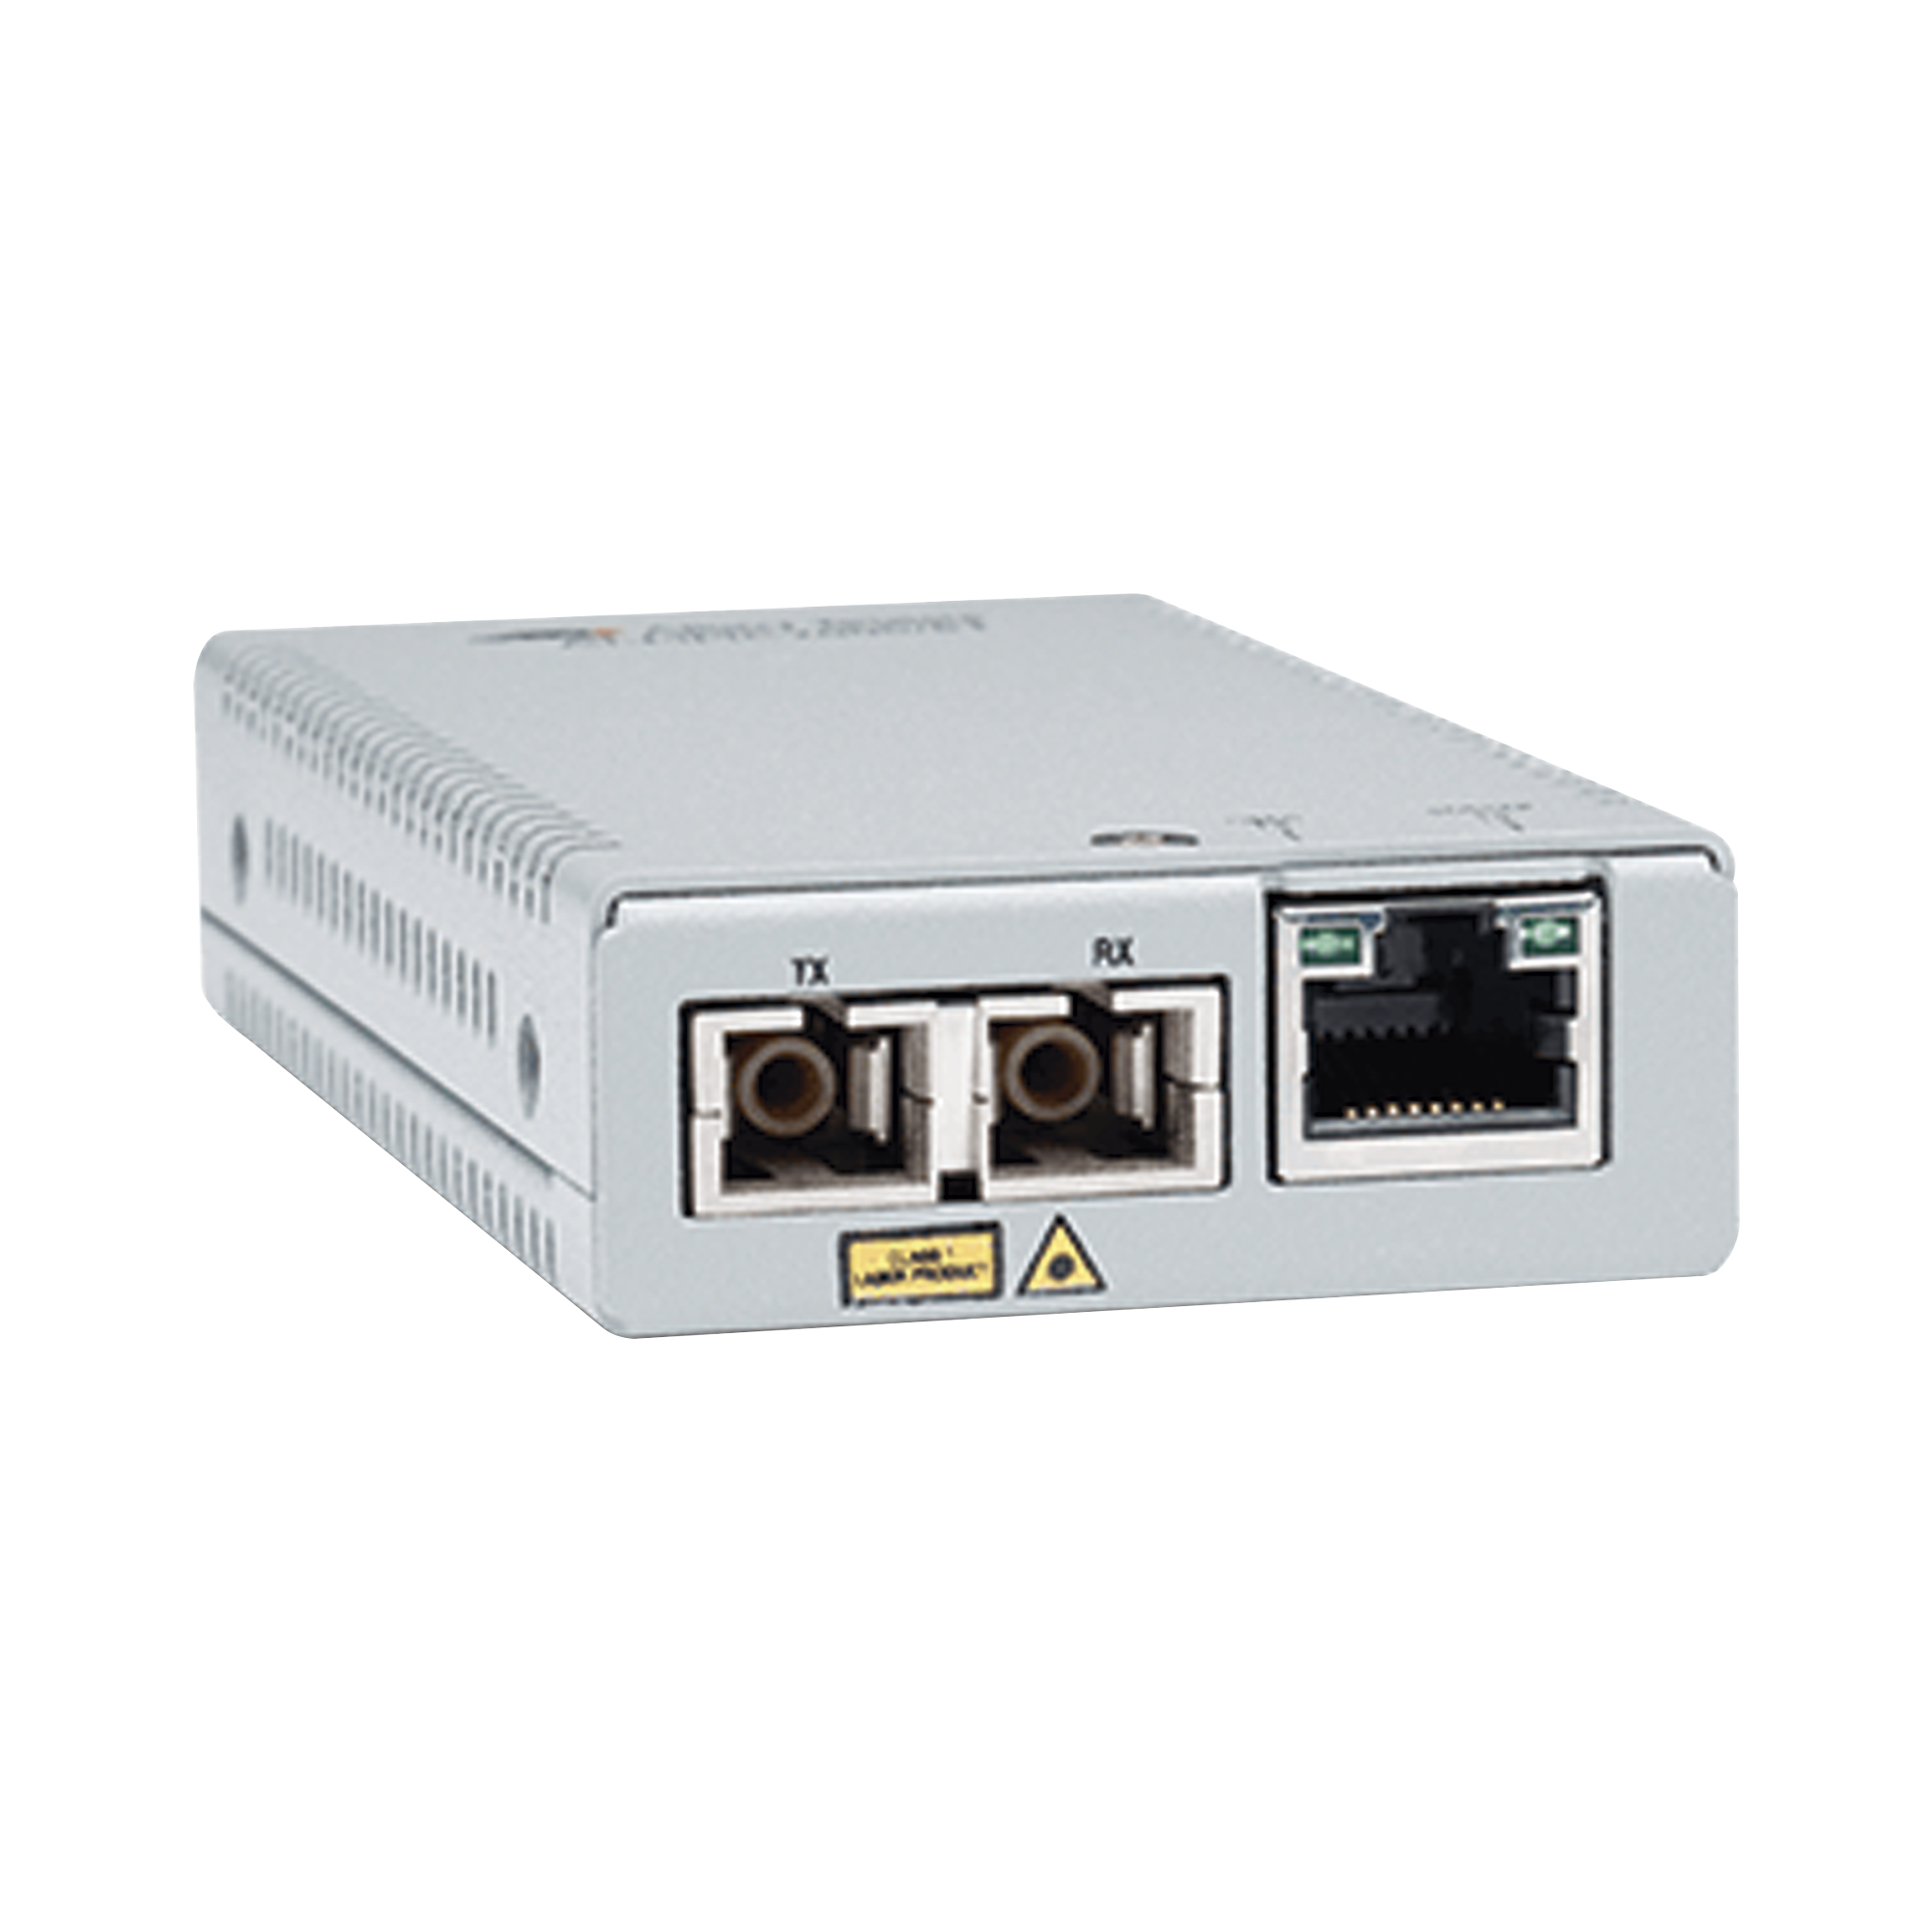 Convertidor de medios Gigabit Ethernet a fibra óptica, conector SC, multimodo (MMF), distancia de 220 hasta 500 m, con fuente de alimentación multi-región